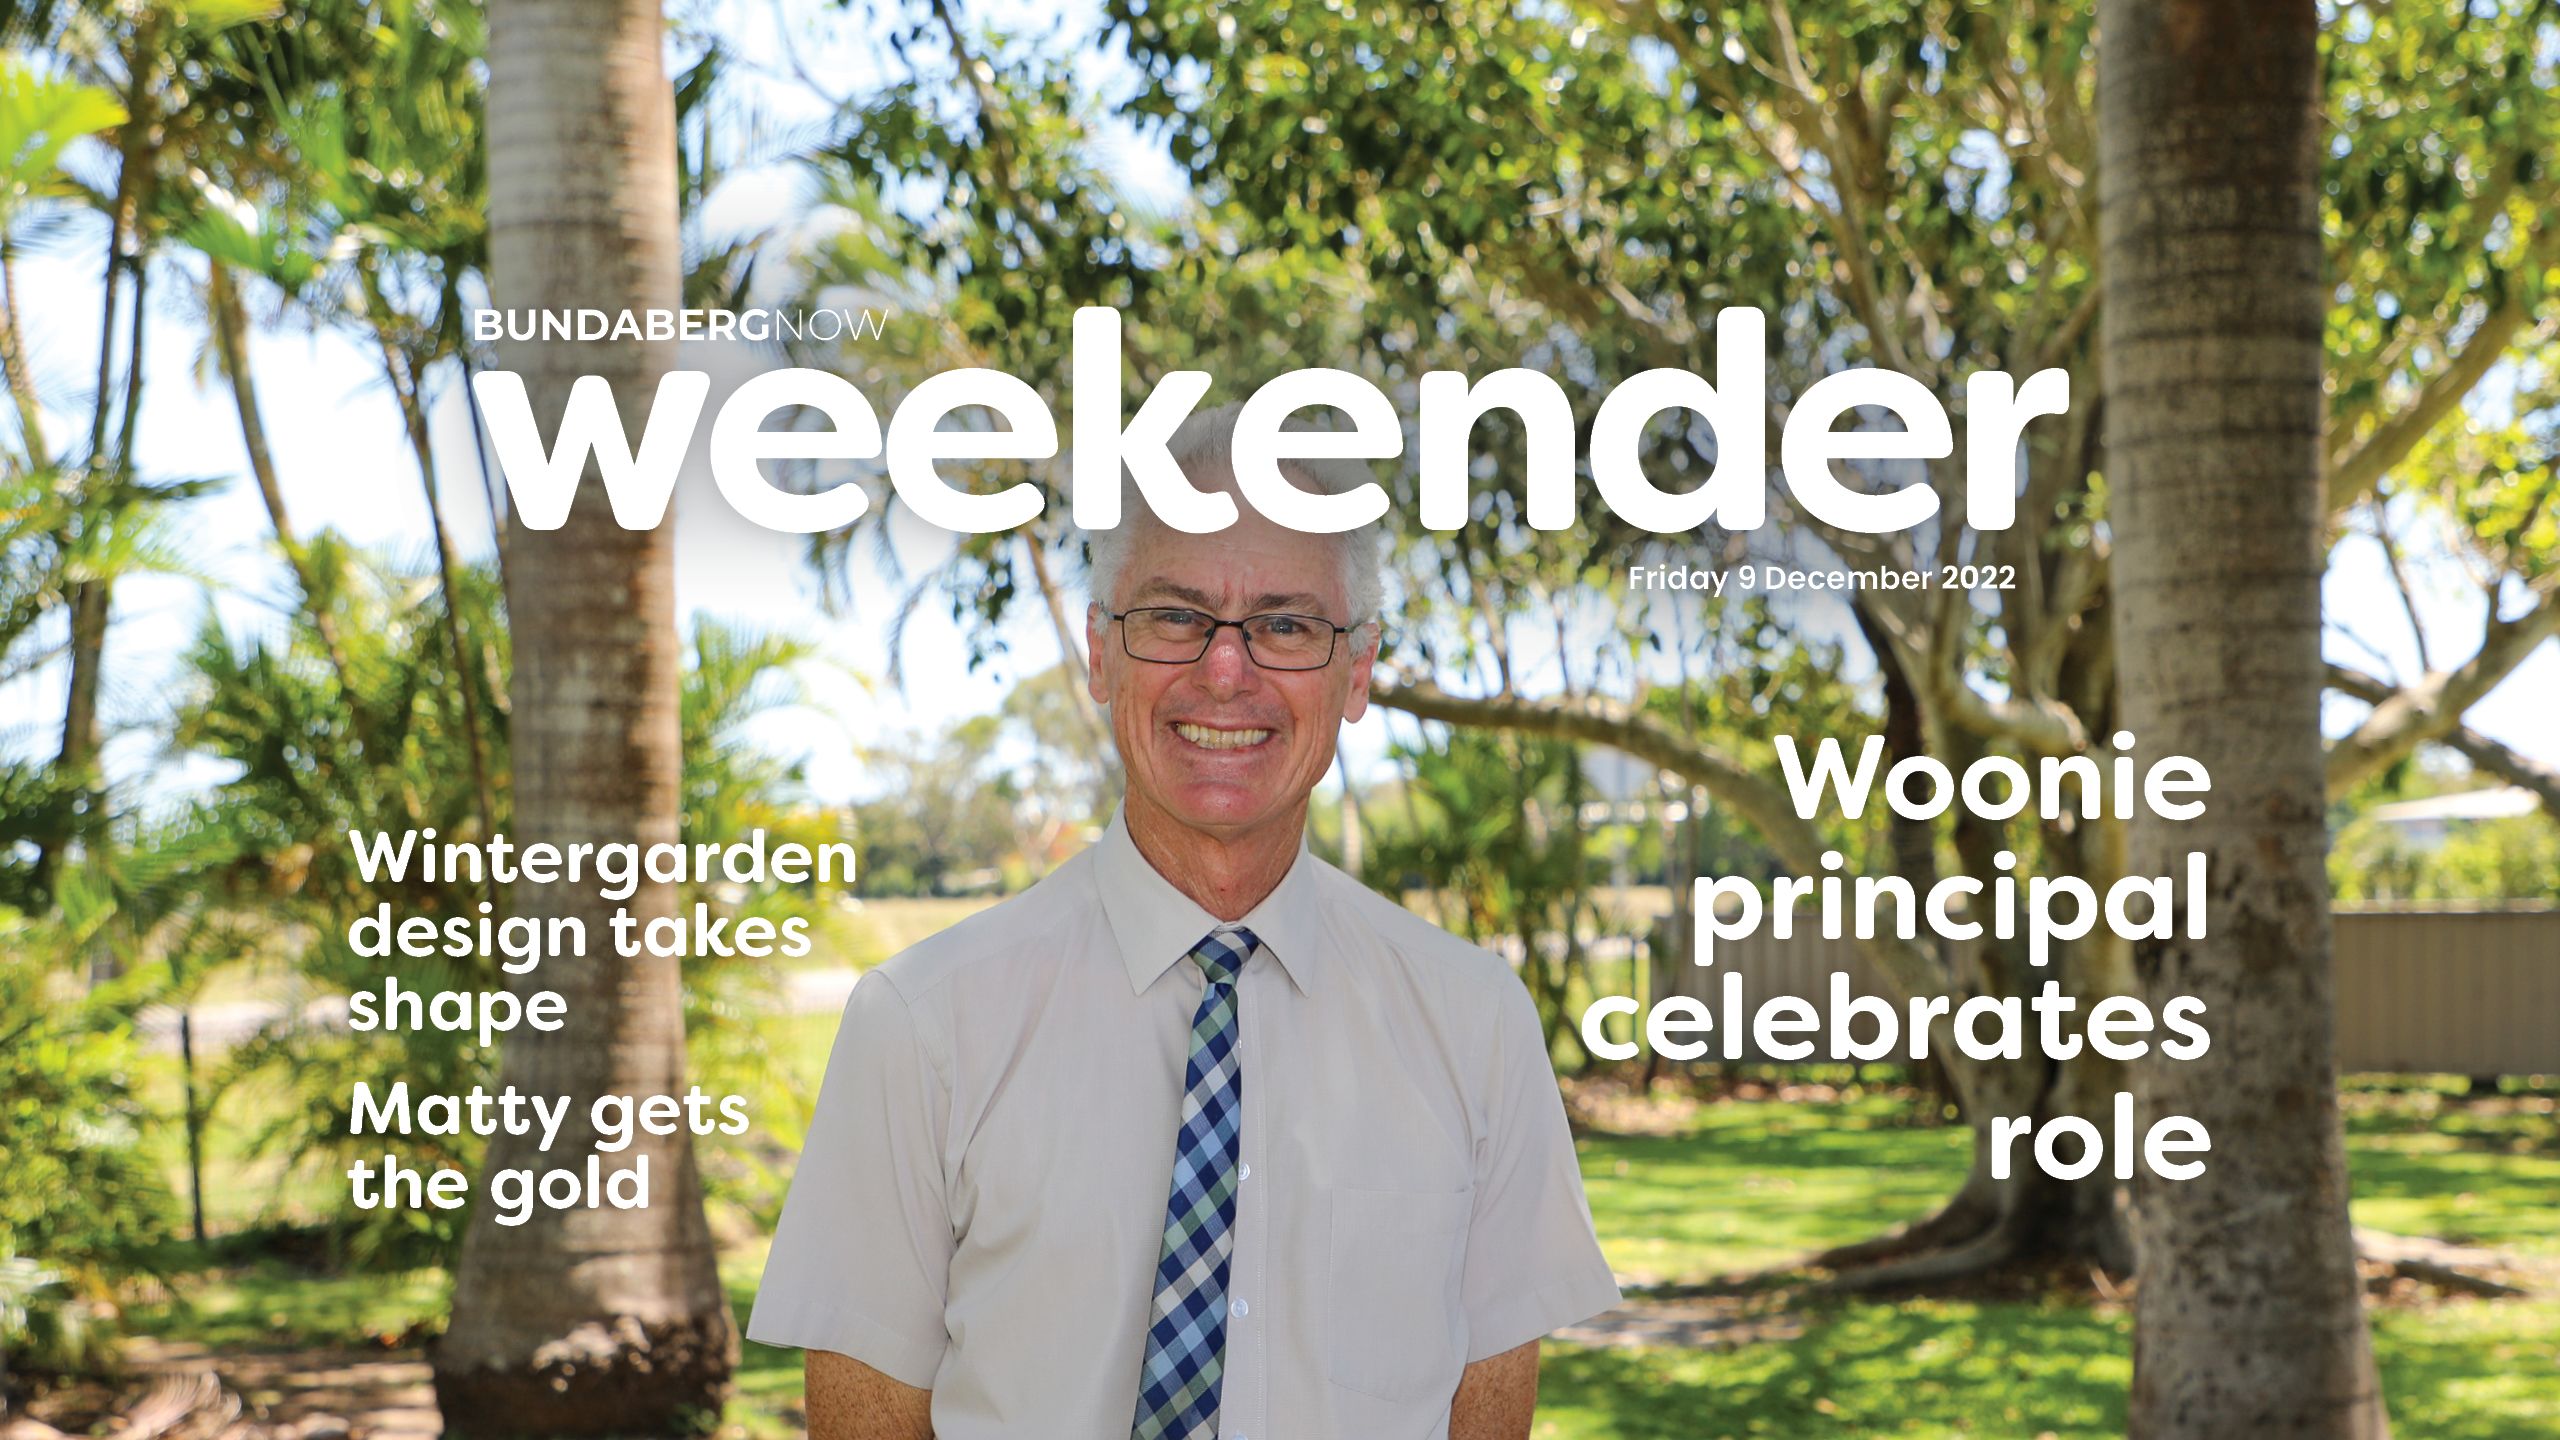 Weekender: Woonie principal celebrates role